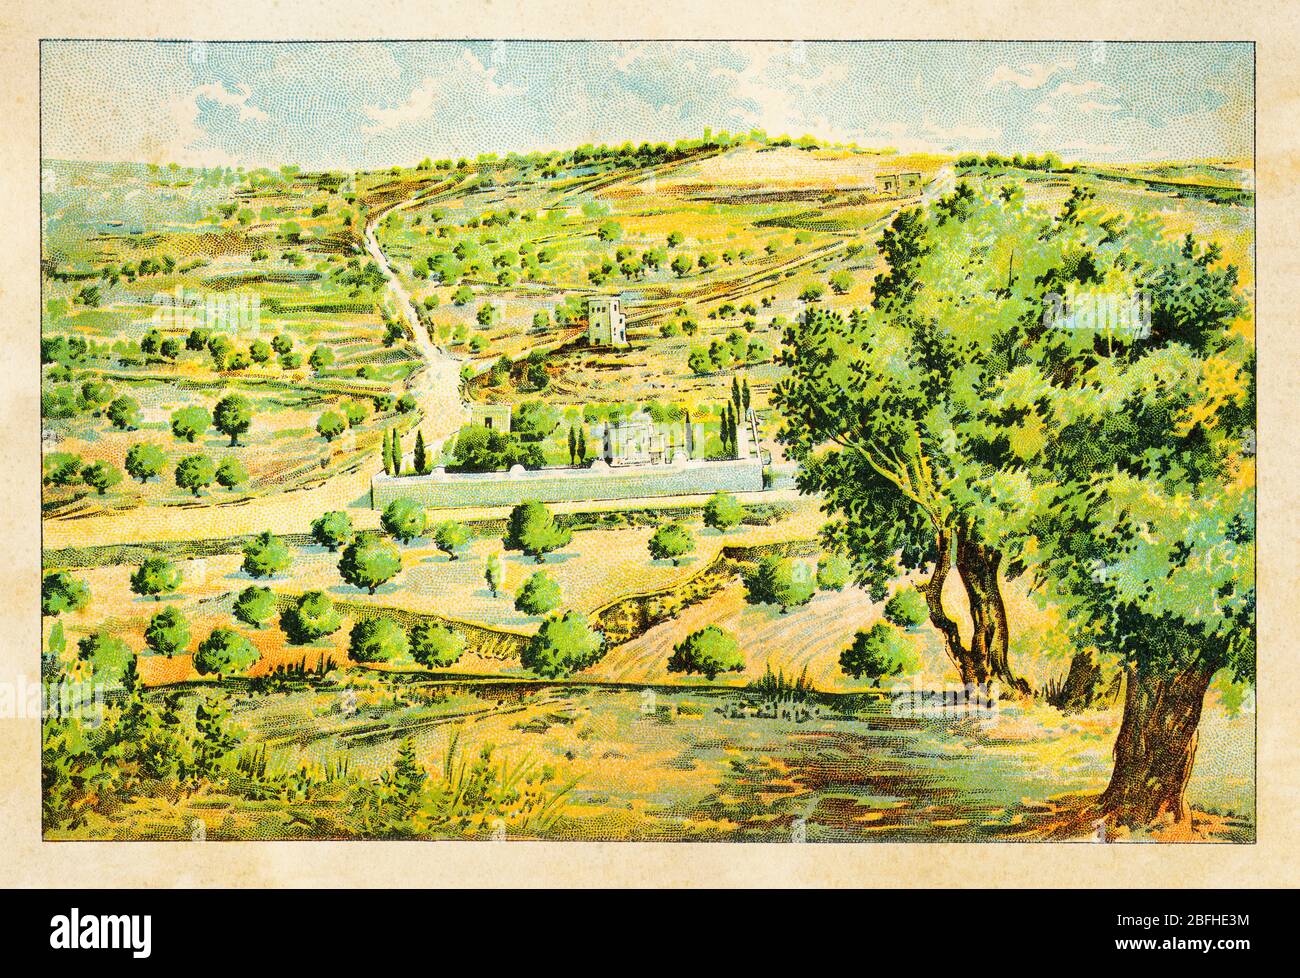 Mont d'OLives (Jebel et-Tur) vue générale sur le jardin de Gethsemane, Jérusalem. Israël, ancienne chromolithographie de couleur la Terre Sainte 1898 Banque D'Images